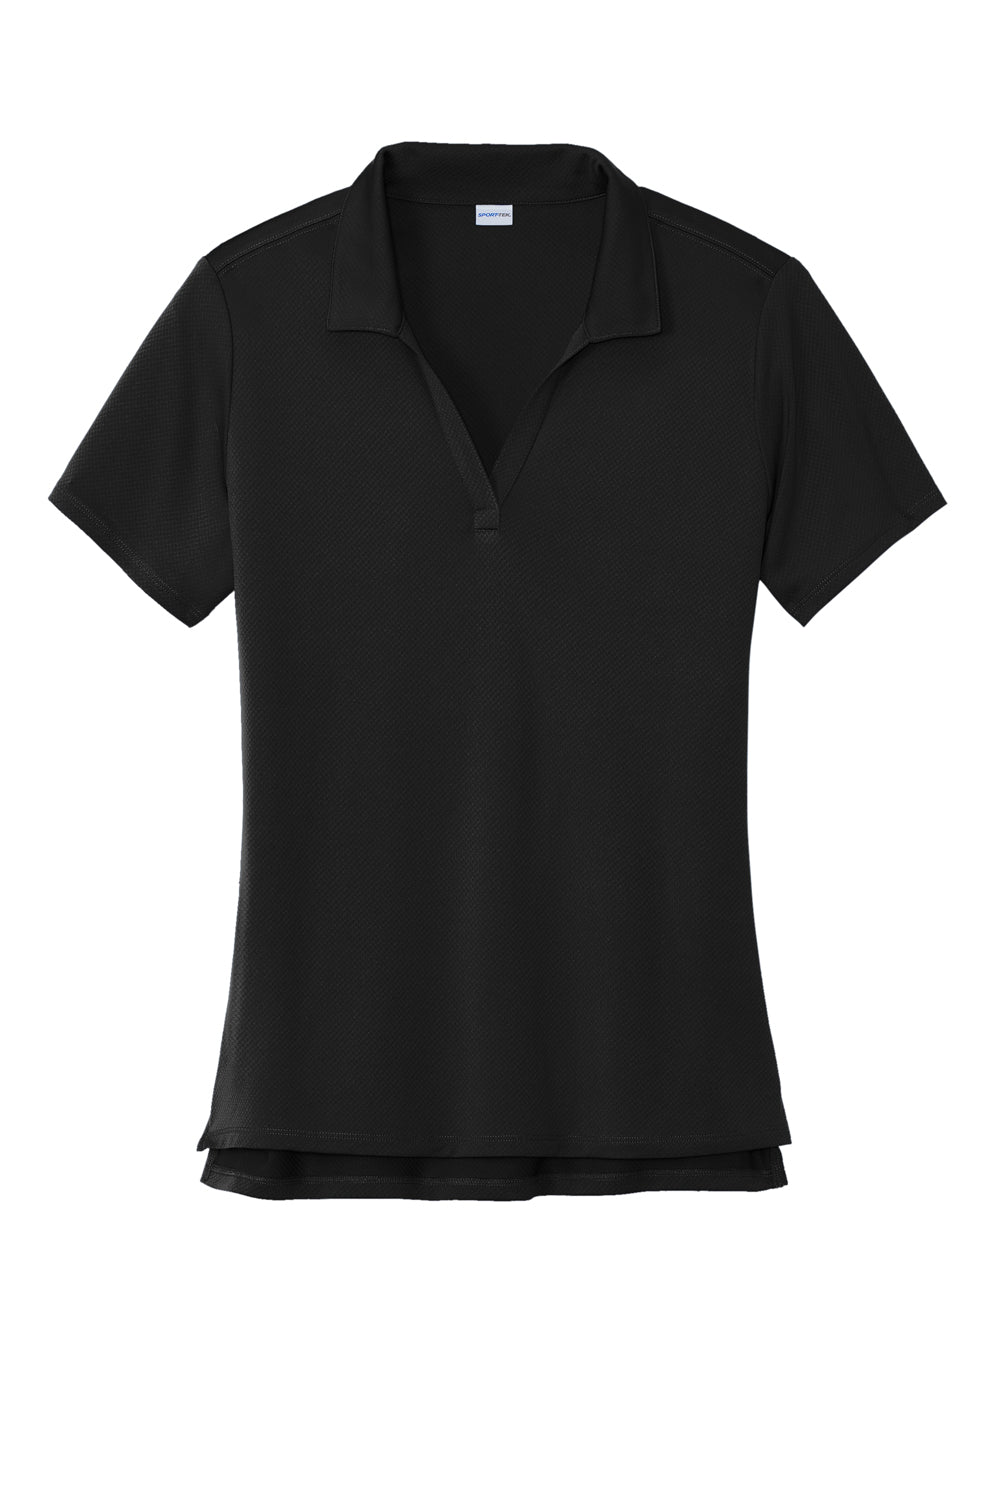 Sport-Tek Womens Sideline Short Sleeve Polo Shirt Black Flat Front